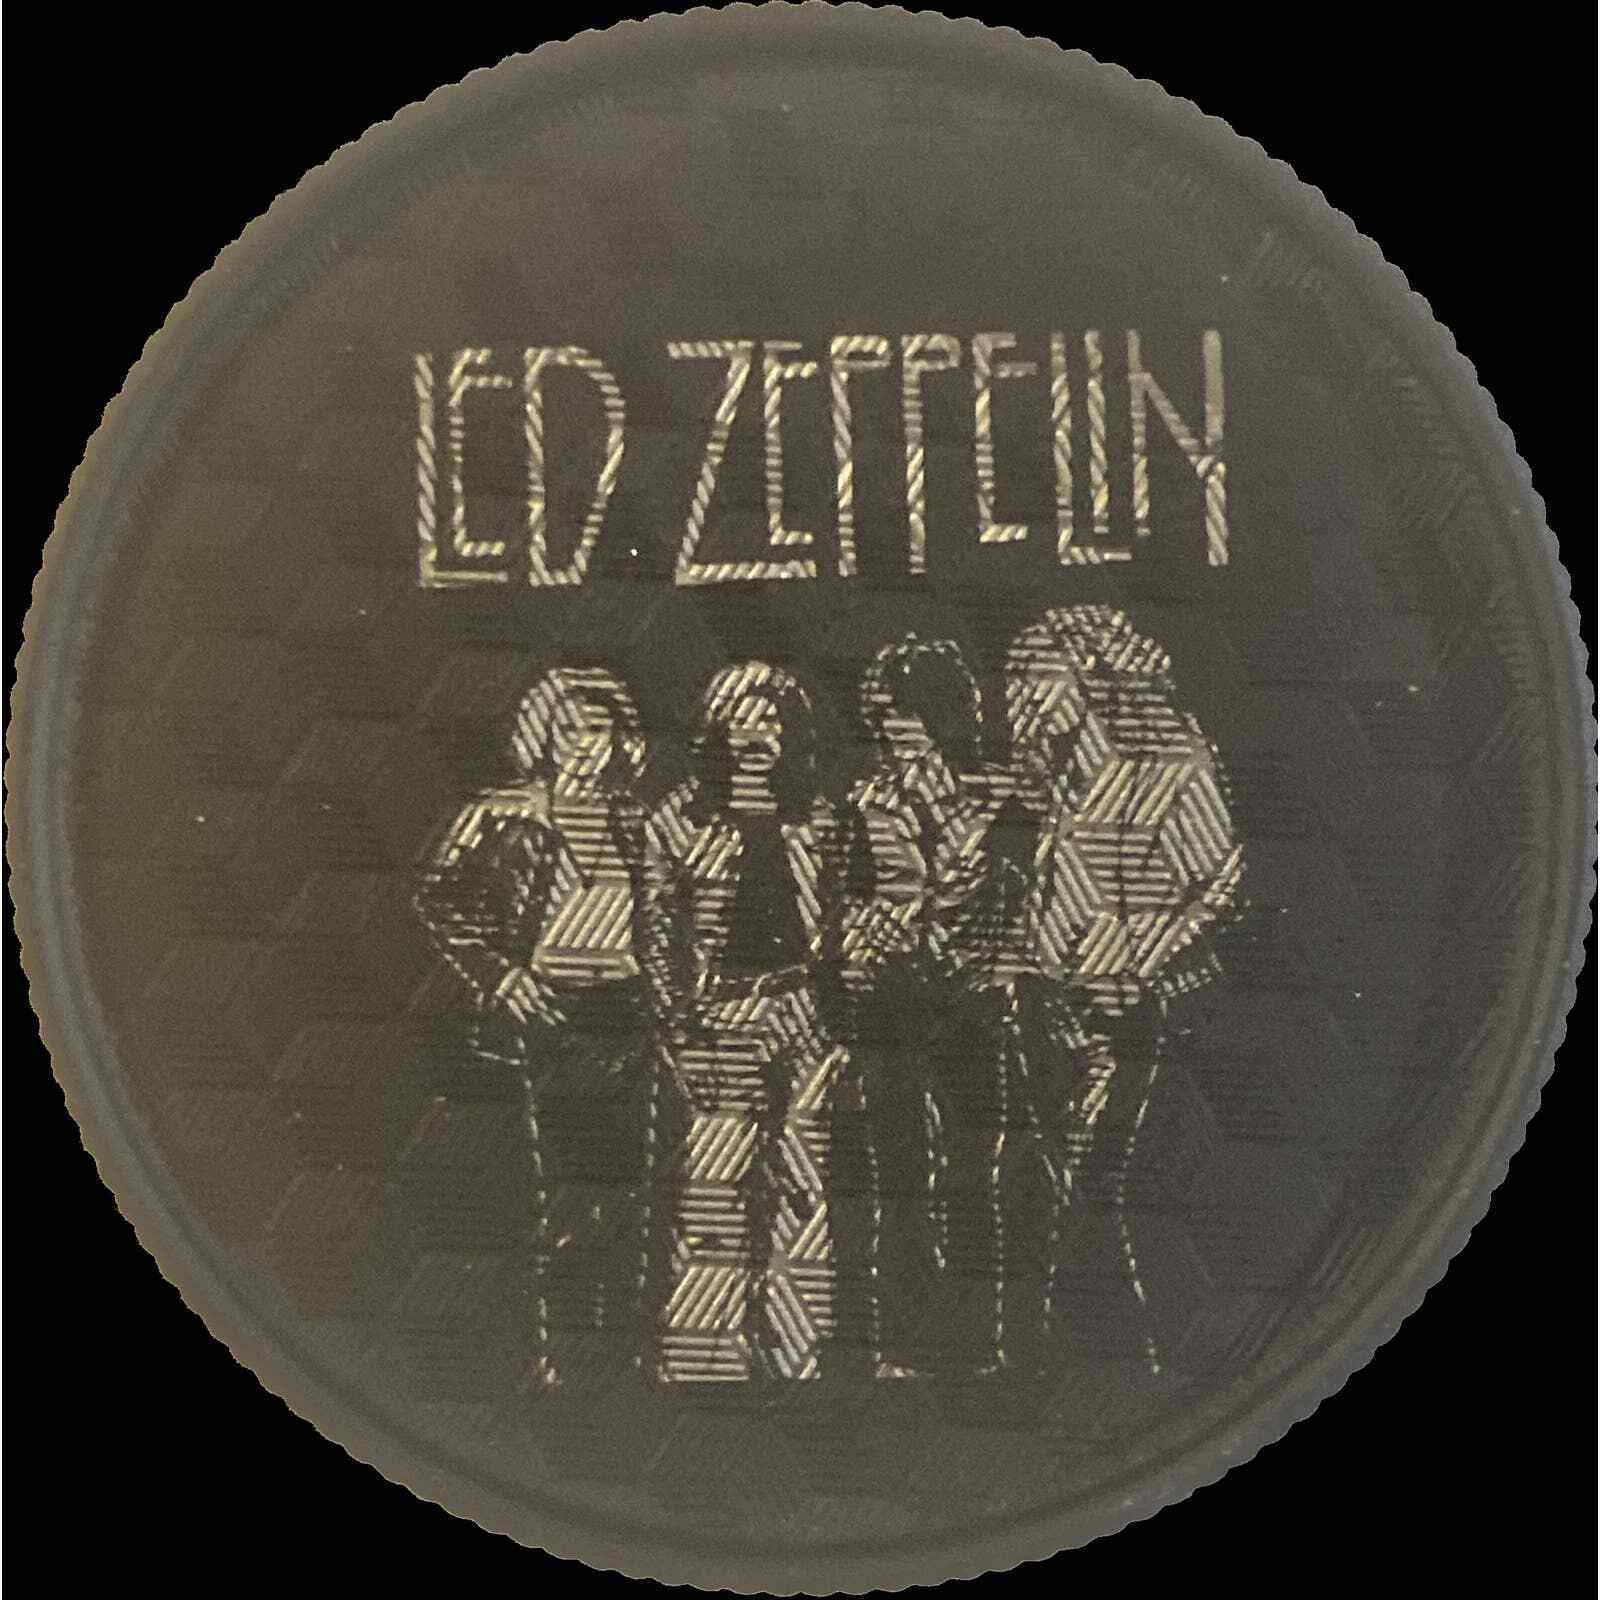 Led Zeppelin Engraved Spice Grinder